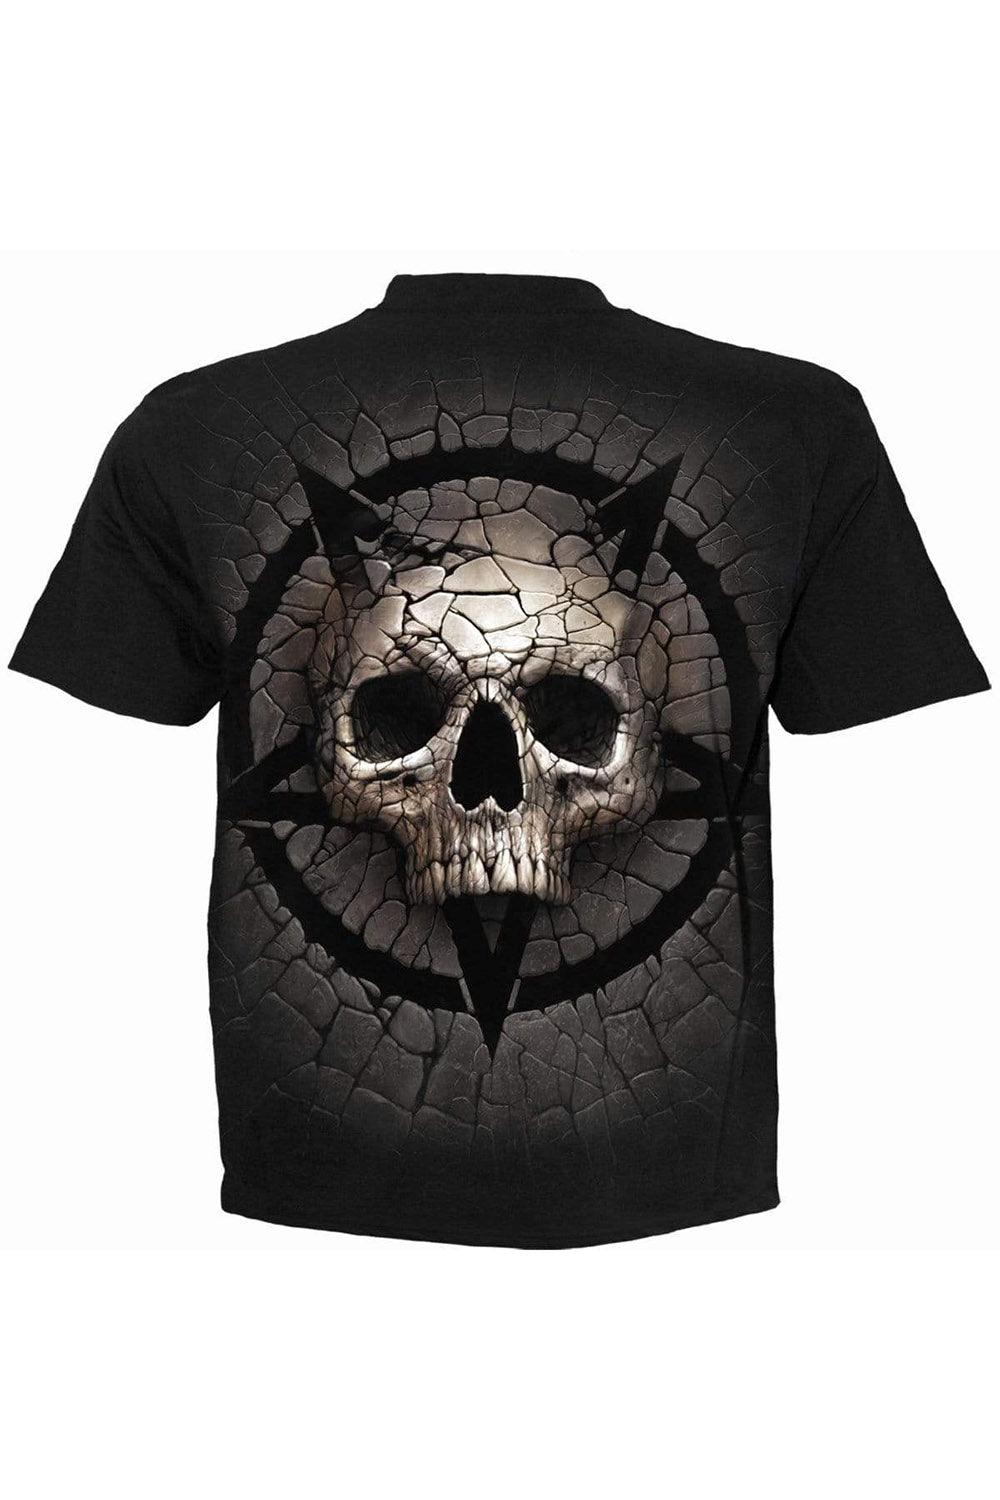 Spiral Cracking Up T-Shirt [Black] - VampireFreaks